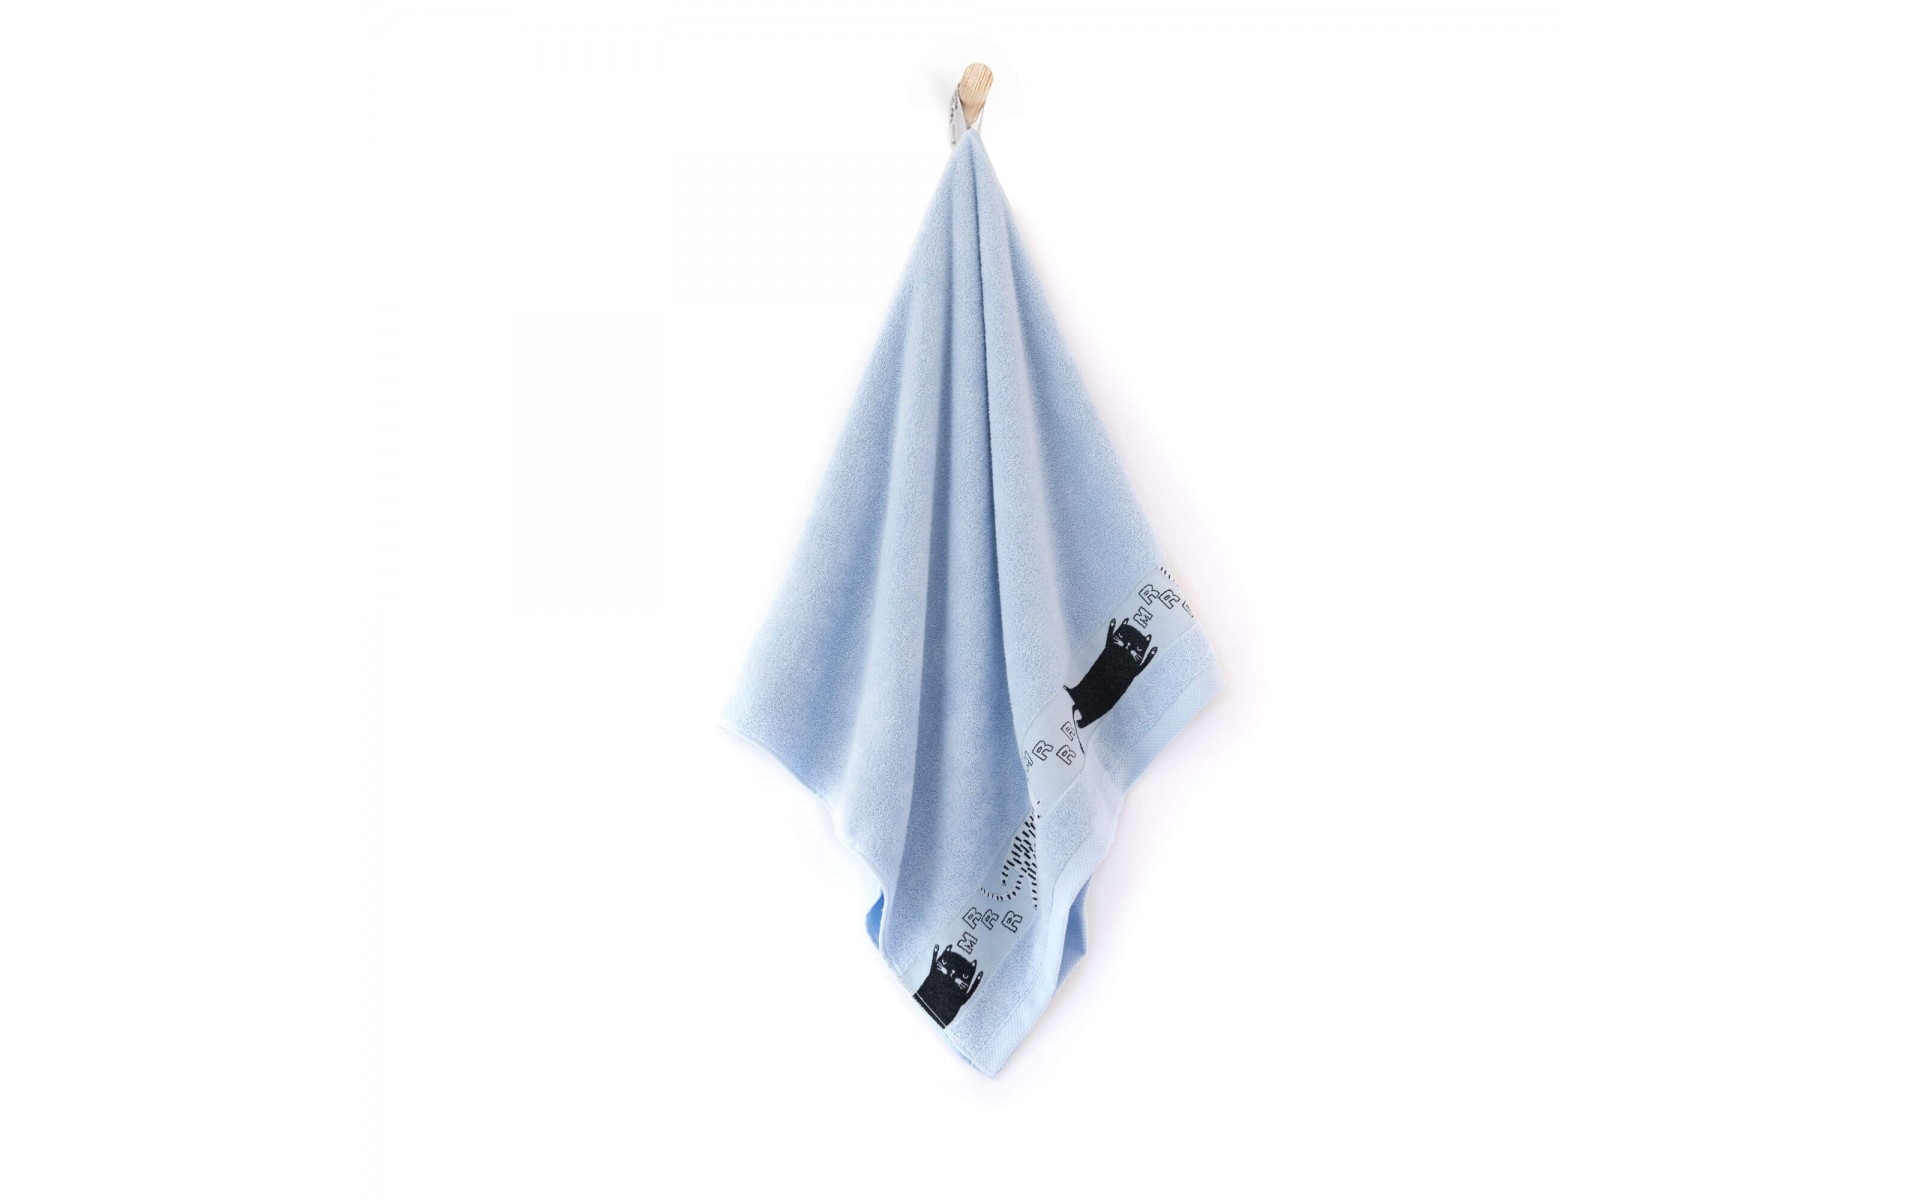 ręcznik KOTY mgiełka - 7486